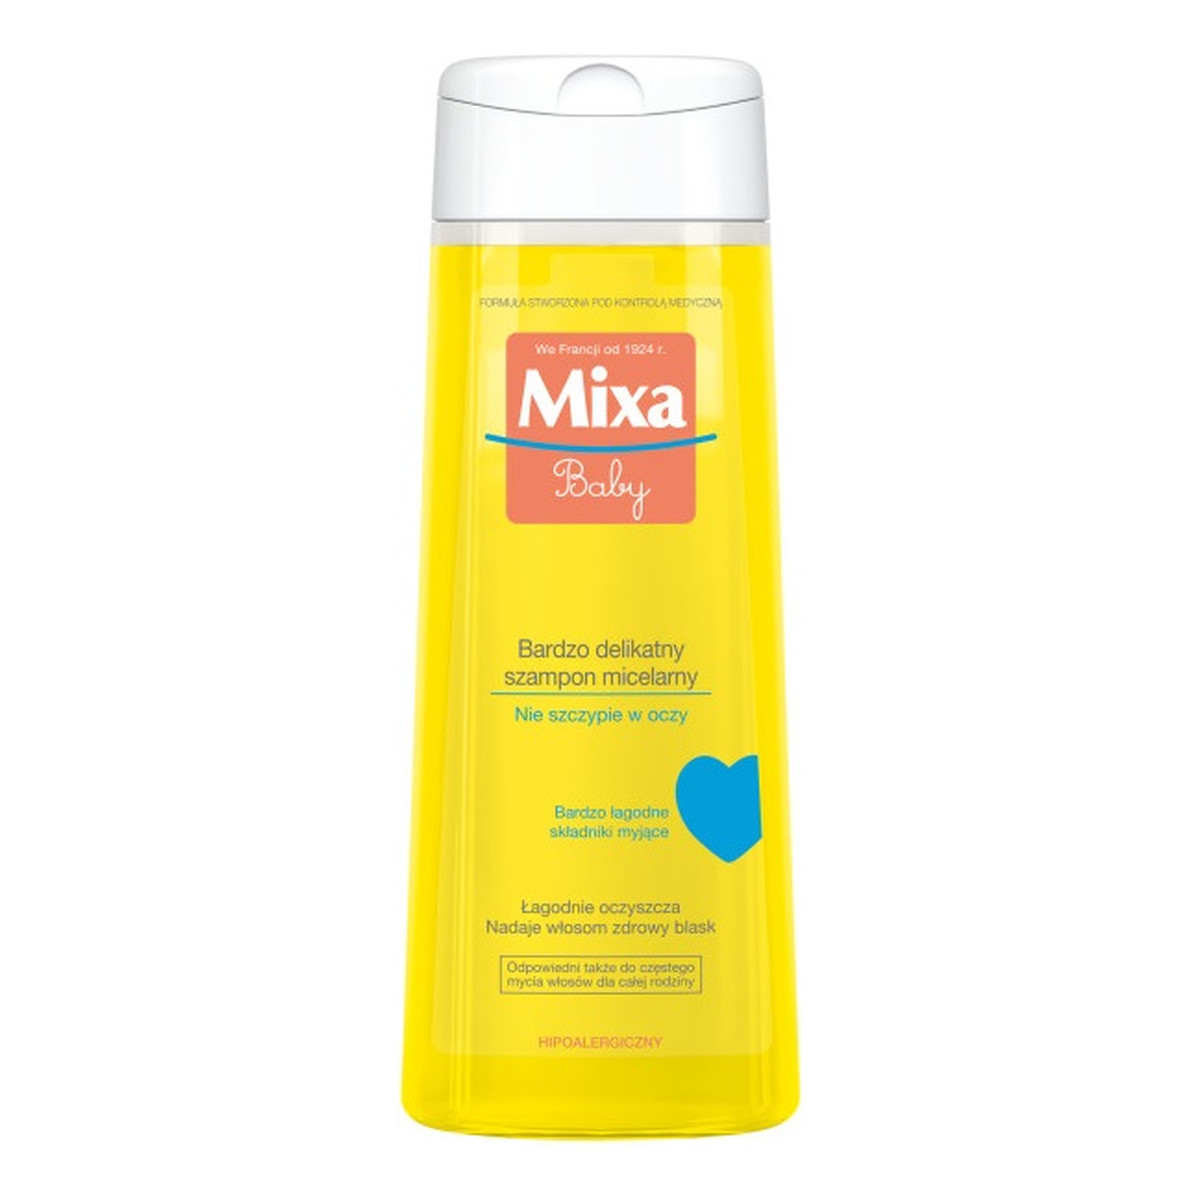 Mixa Baby bardzo delikatny szampon micelarny 300ml